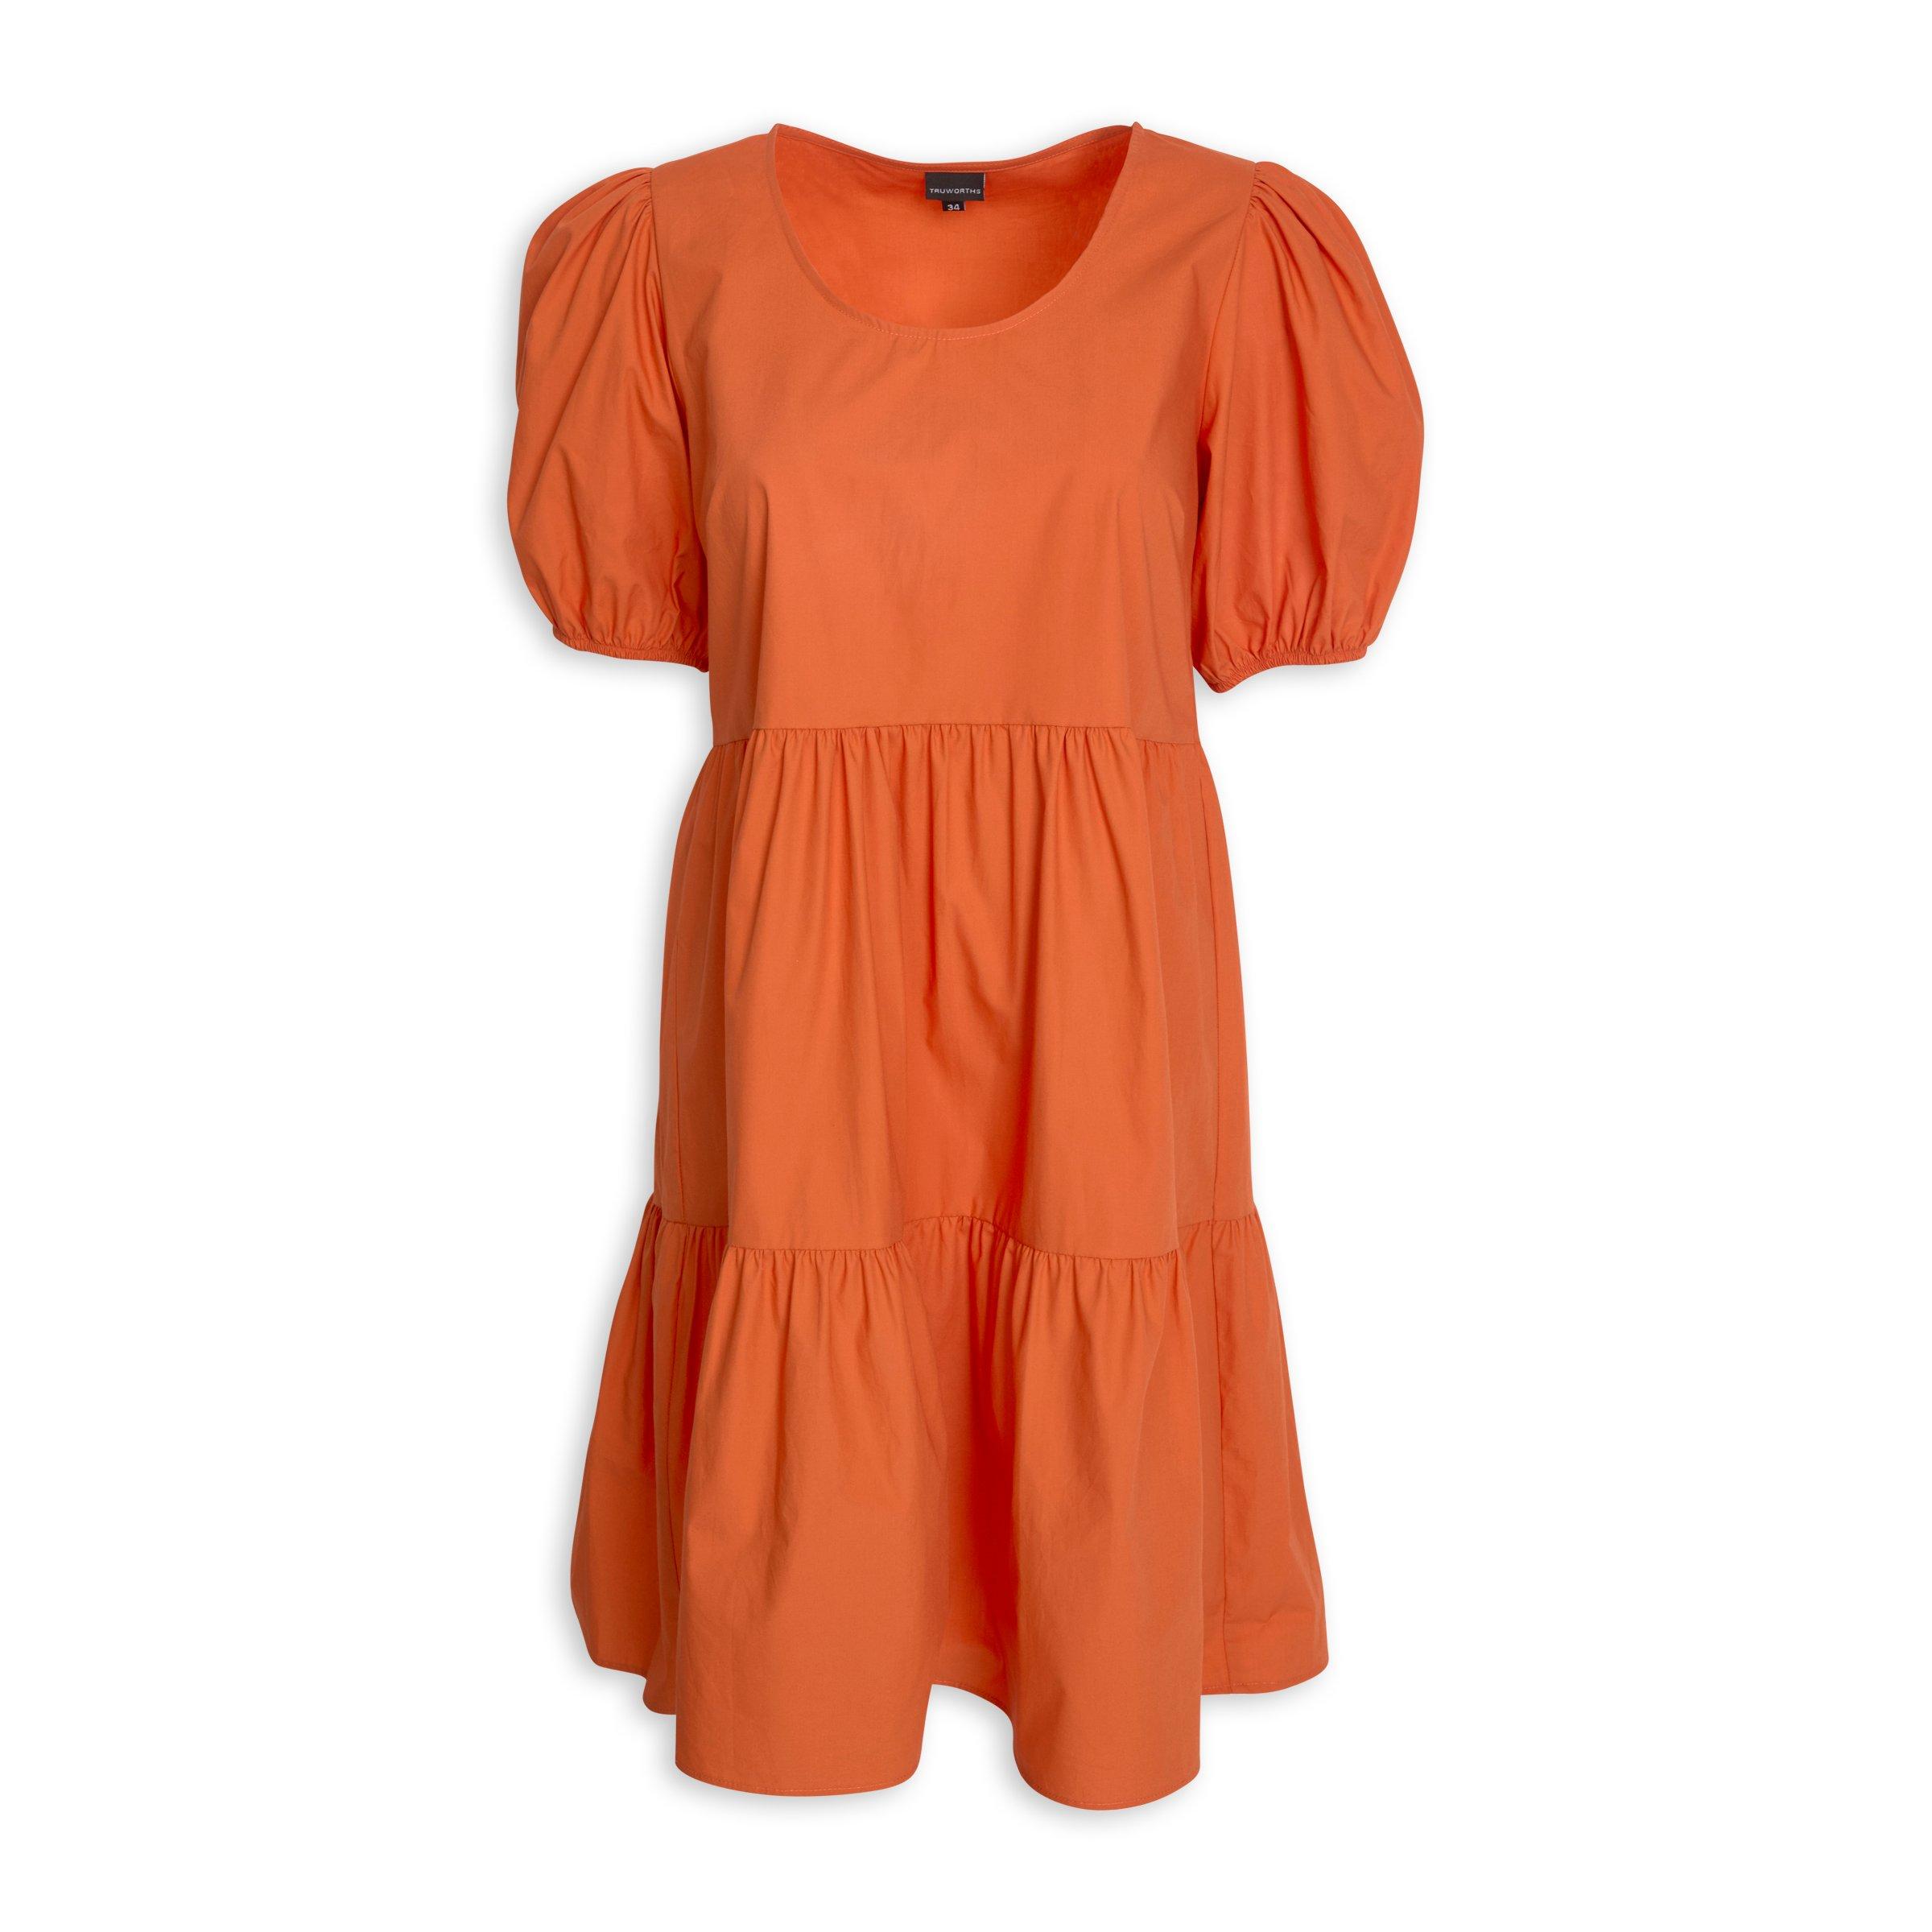 Buy OBR Orange A-Line Dress Online | Truworths